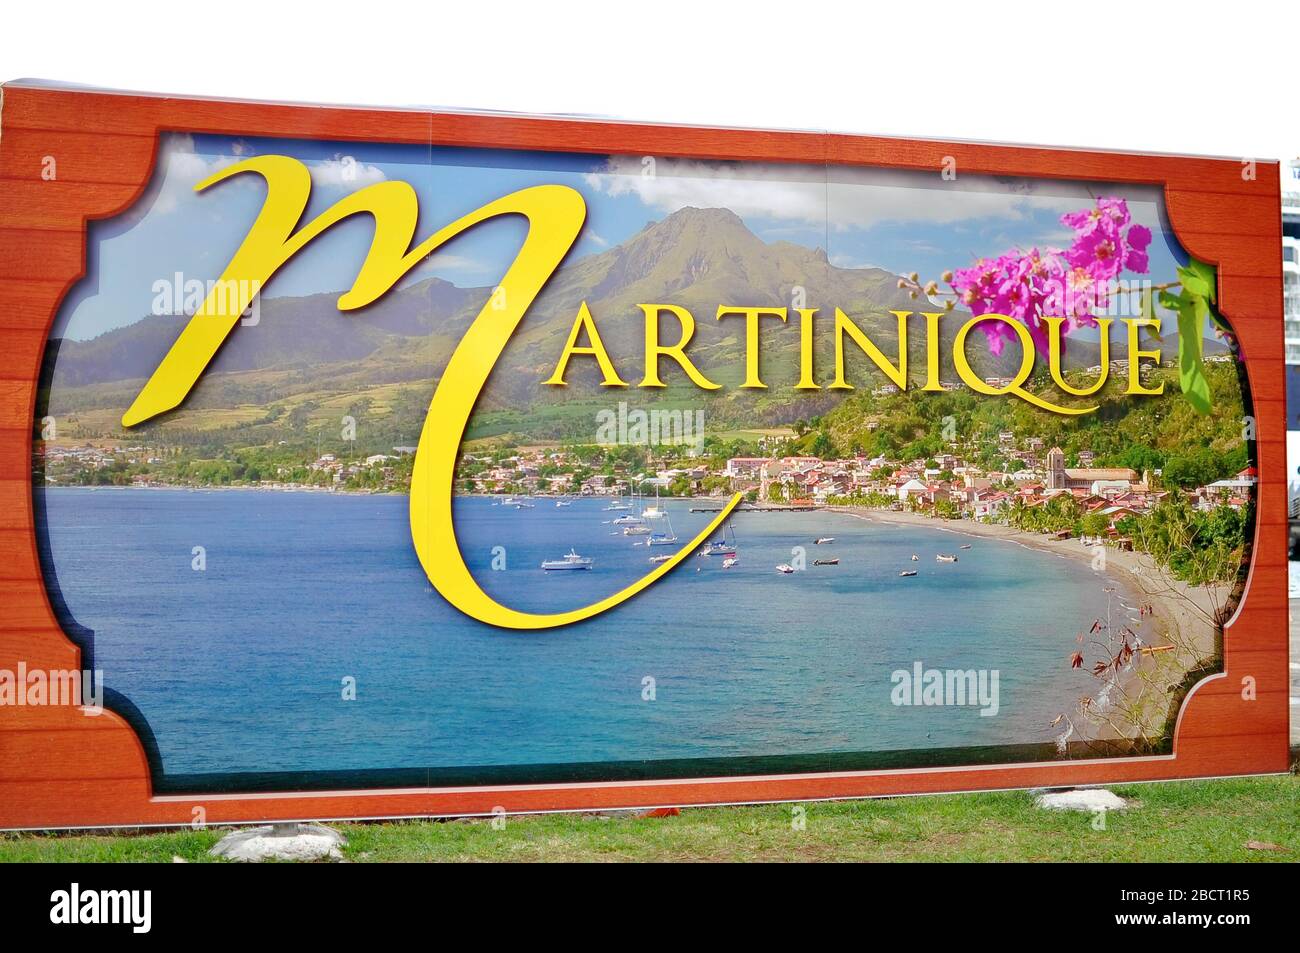 Martinique grand panneau toile de fond avec une image d'une plage et de la ville pour les touristes la prendre une photo. Banque D'Images